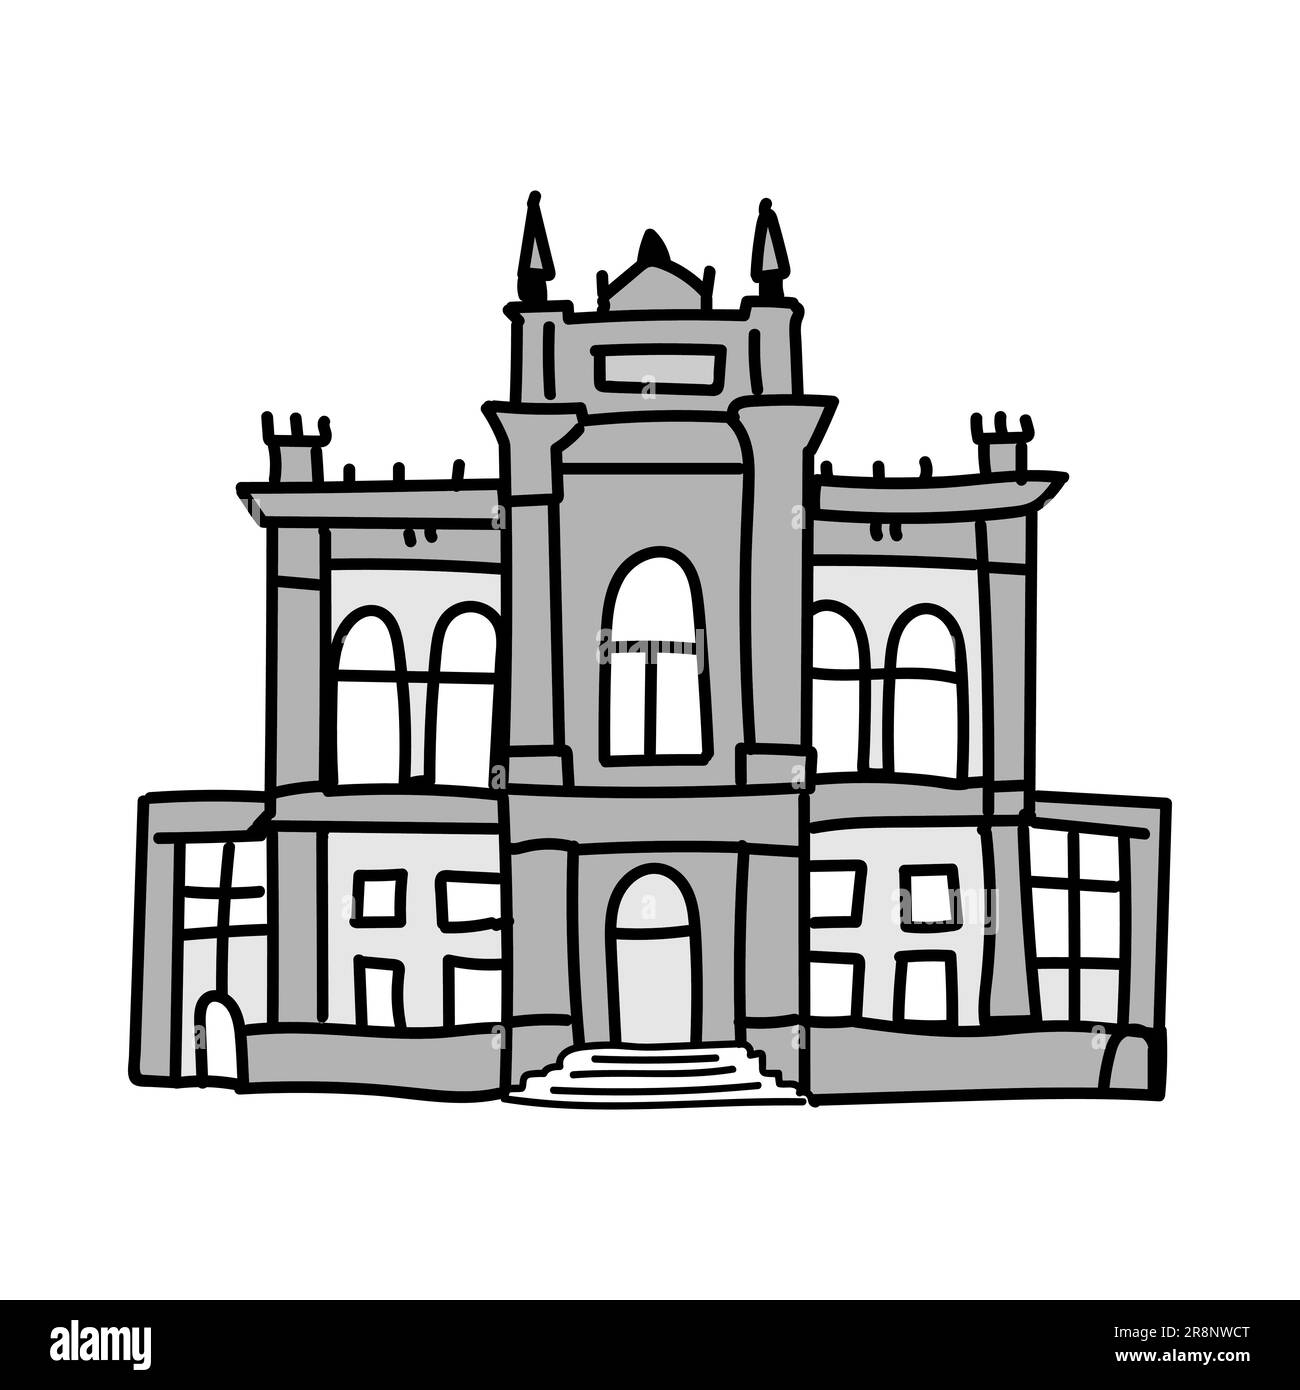 Bâtiment urbain gris de style classique avec colonnes et capitales. Ancienne université ou musée. Illustration vectorielle isolée sur fond blanc Illustration de Vecteur